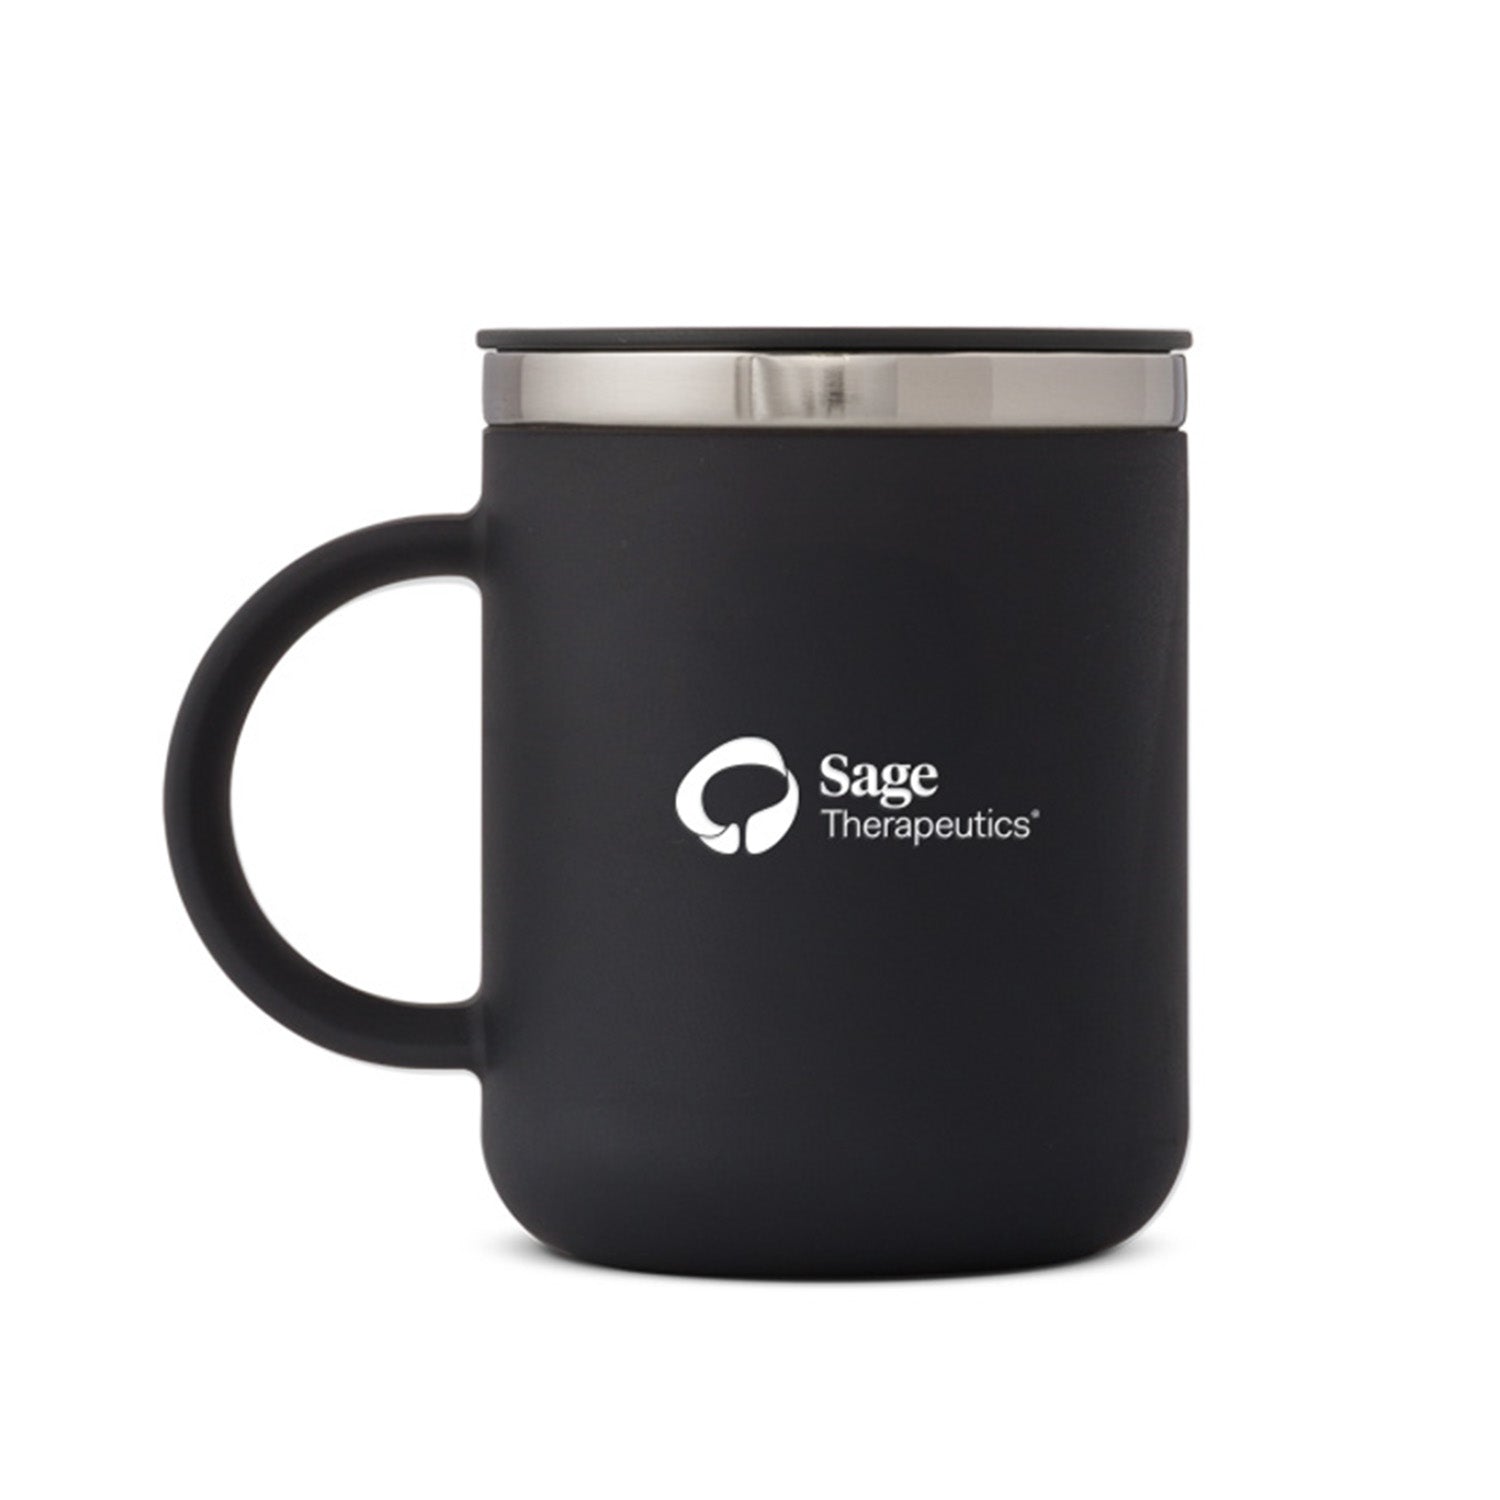 Hydro Flask – Mission Coffee, LLC